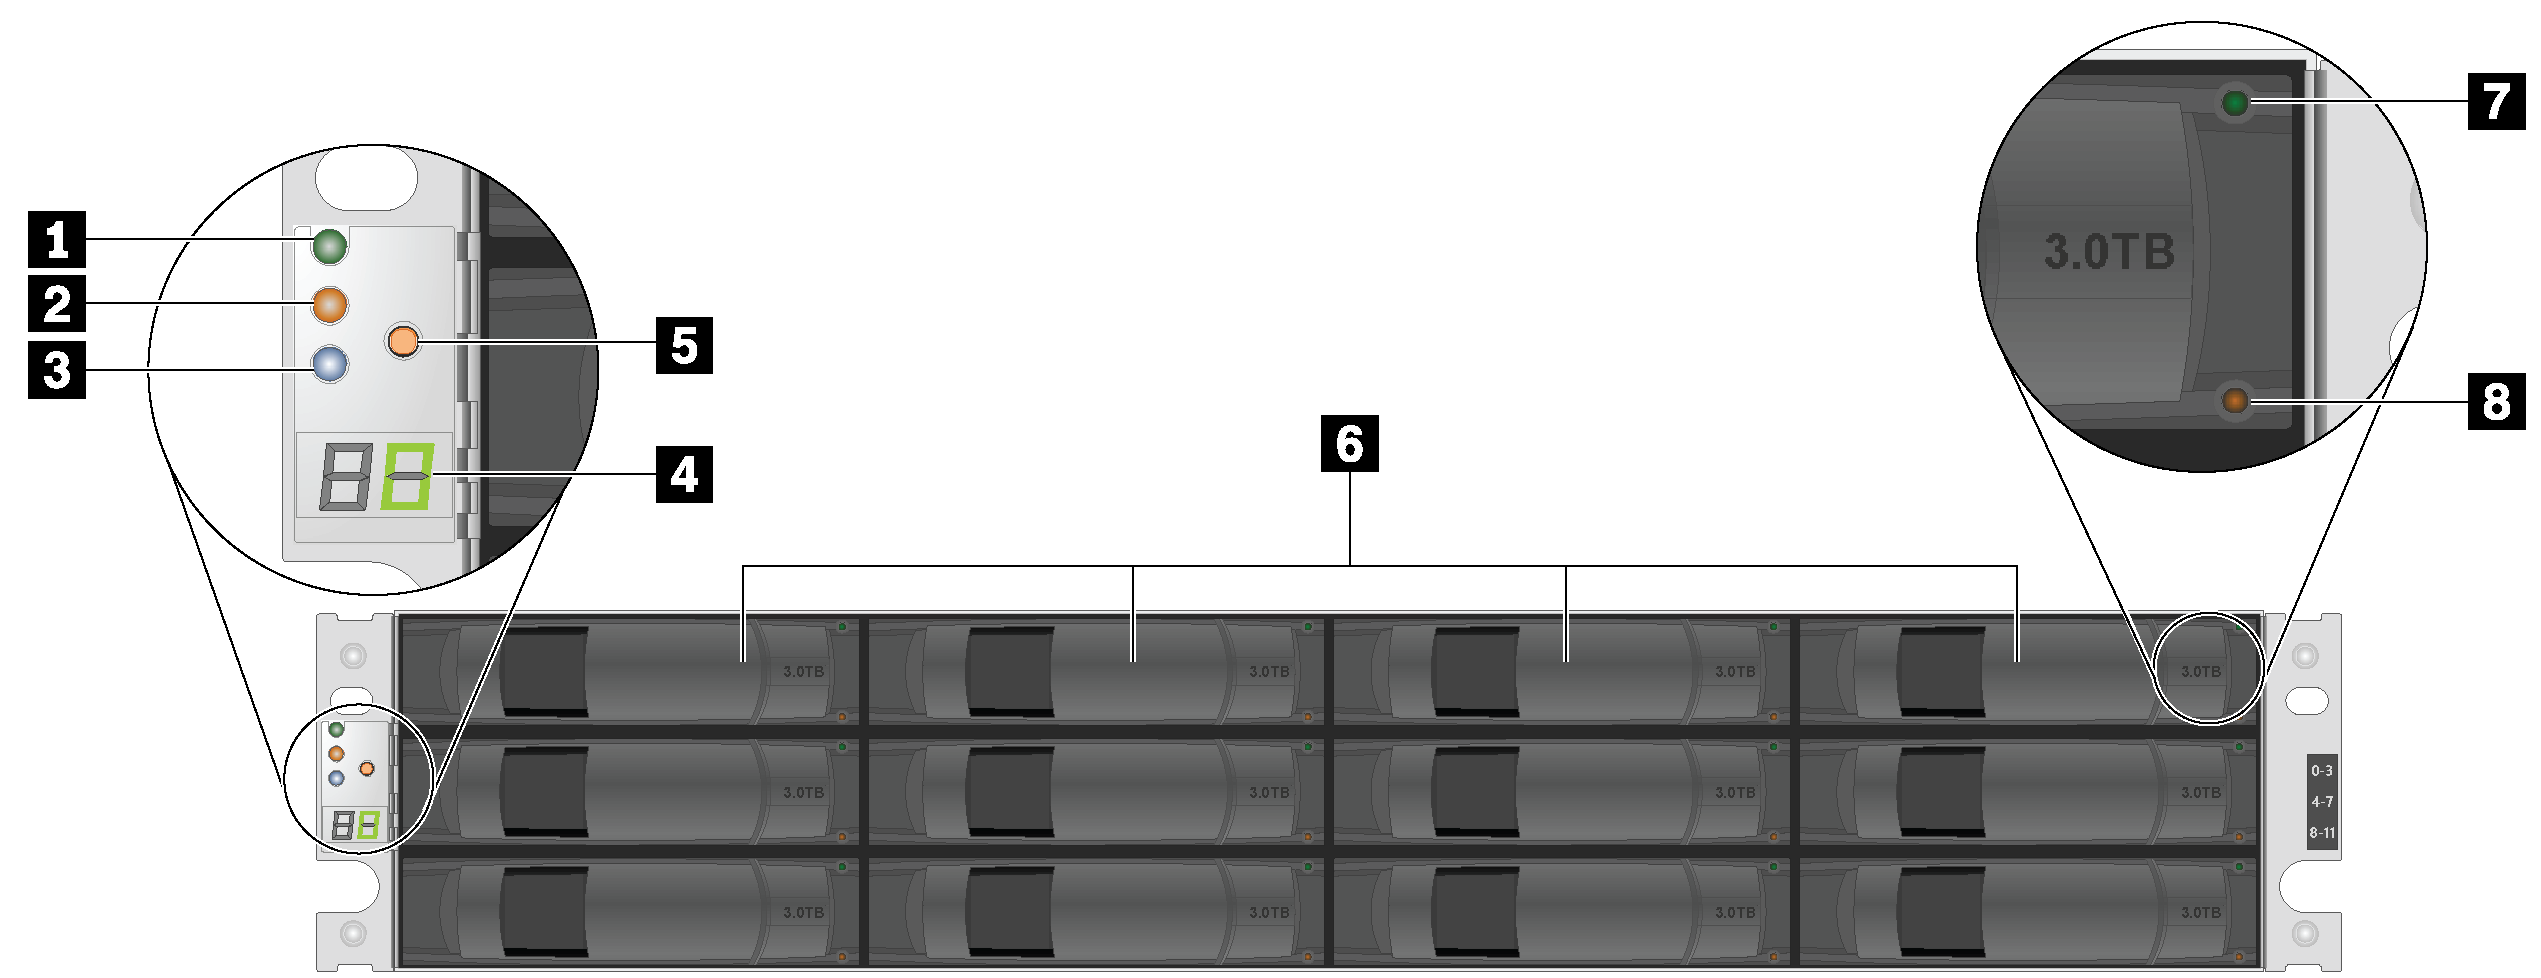 Vista frontal de modelos com compartimentos de 12 unidades